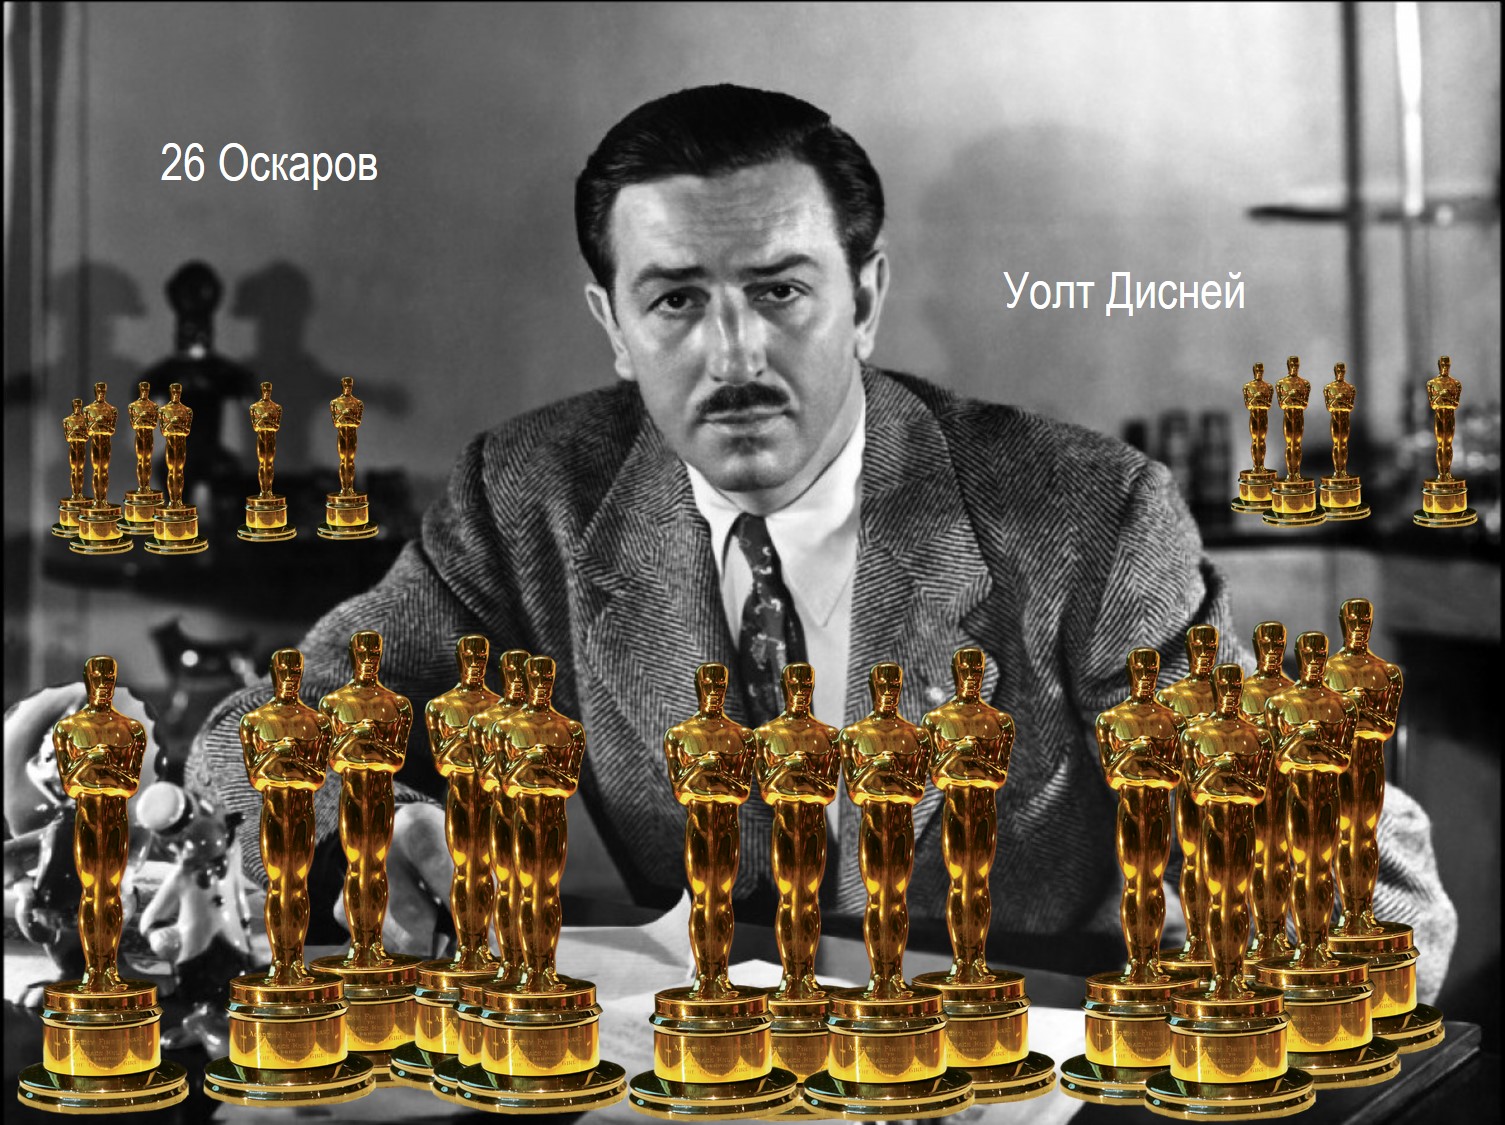 Больше всего Оскаров получил Уолт Дисней 26 Оскаров